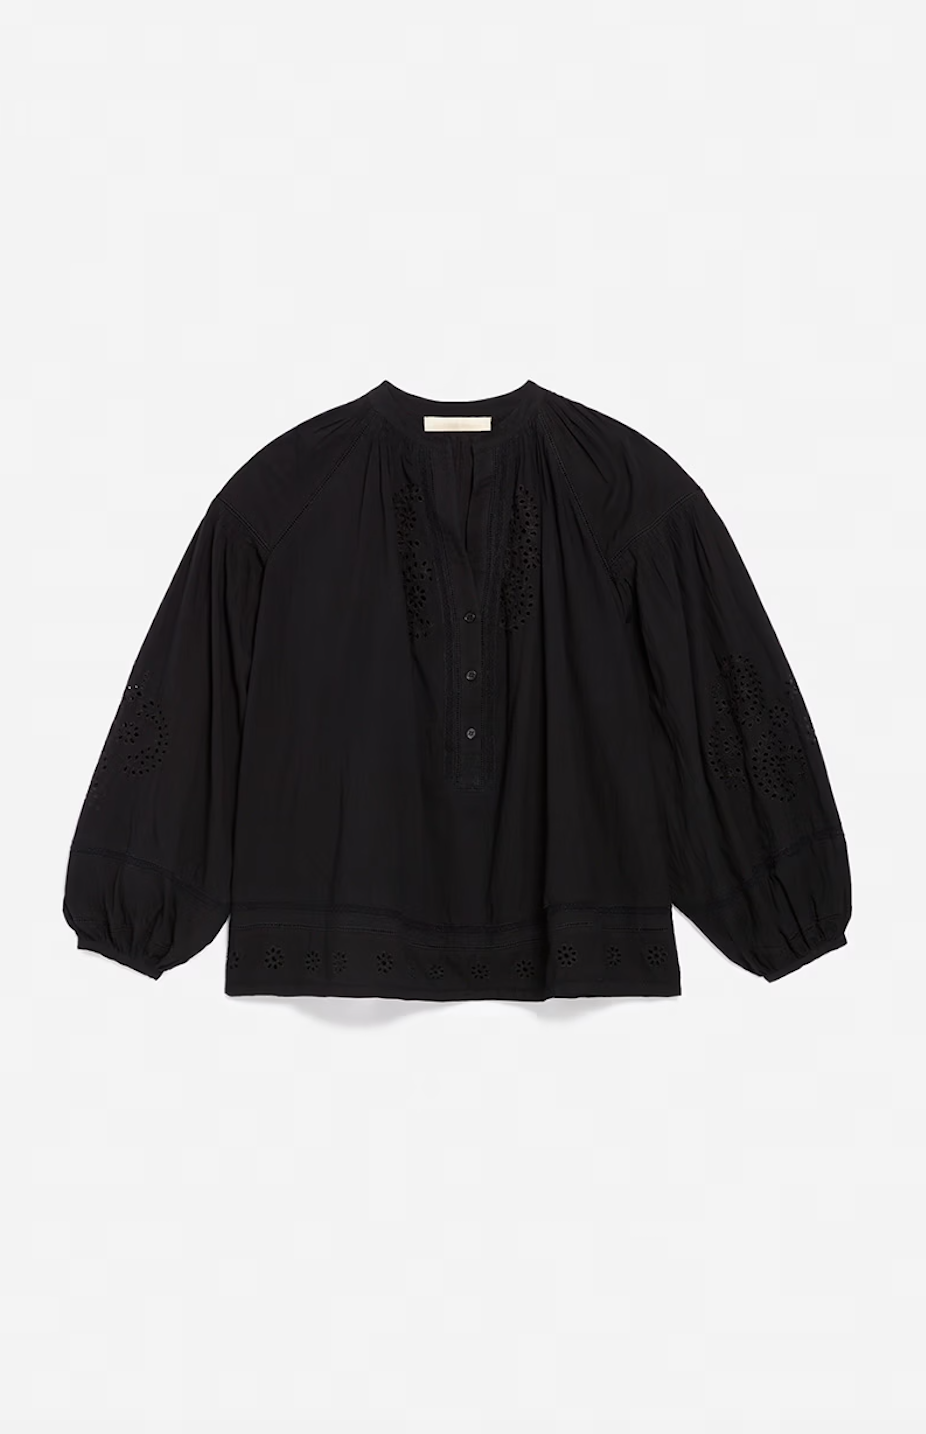 Nipoa blouse, black